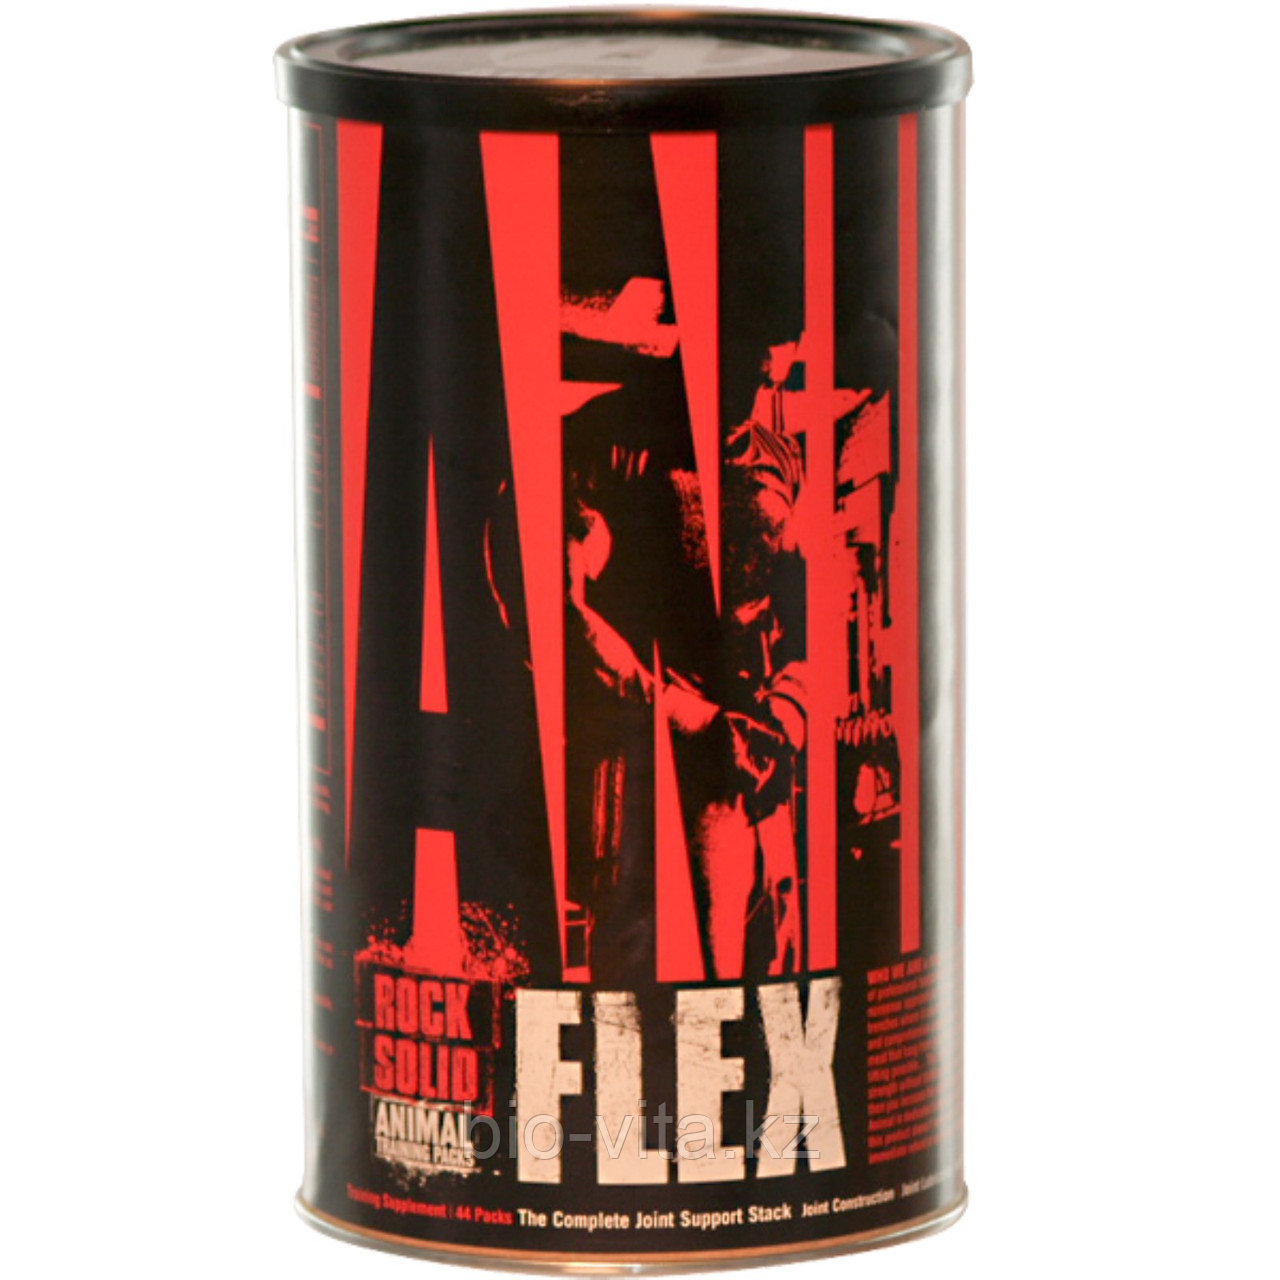 ЭнималФлекс/Animal Flax,комплекс для поддержания мышц, 44 пакета.   Universal NutritionБЕСПЛАТНАЯ ДОСТАВКА